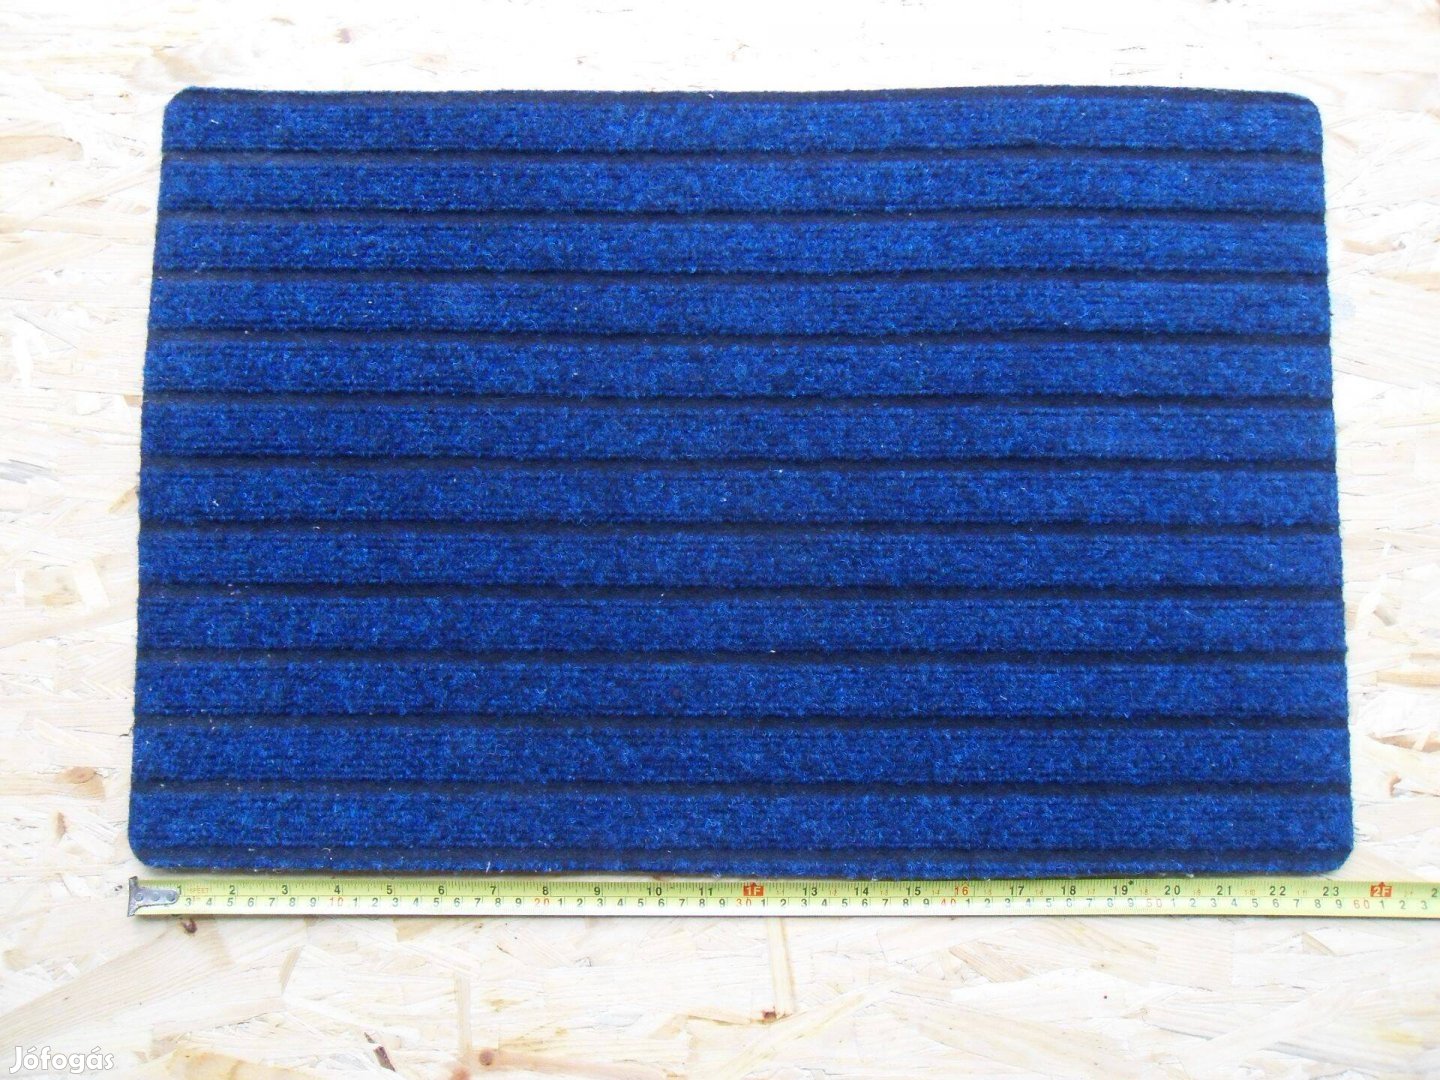 Új - Lábtörlő eladó - 60x40cm-es bordás, vastag, kék-fekete színű lábt